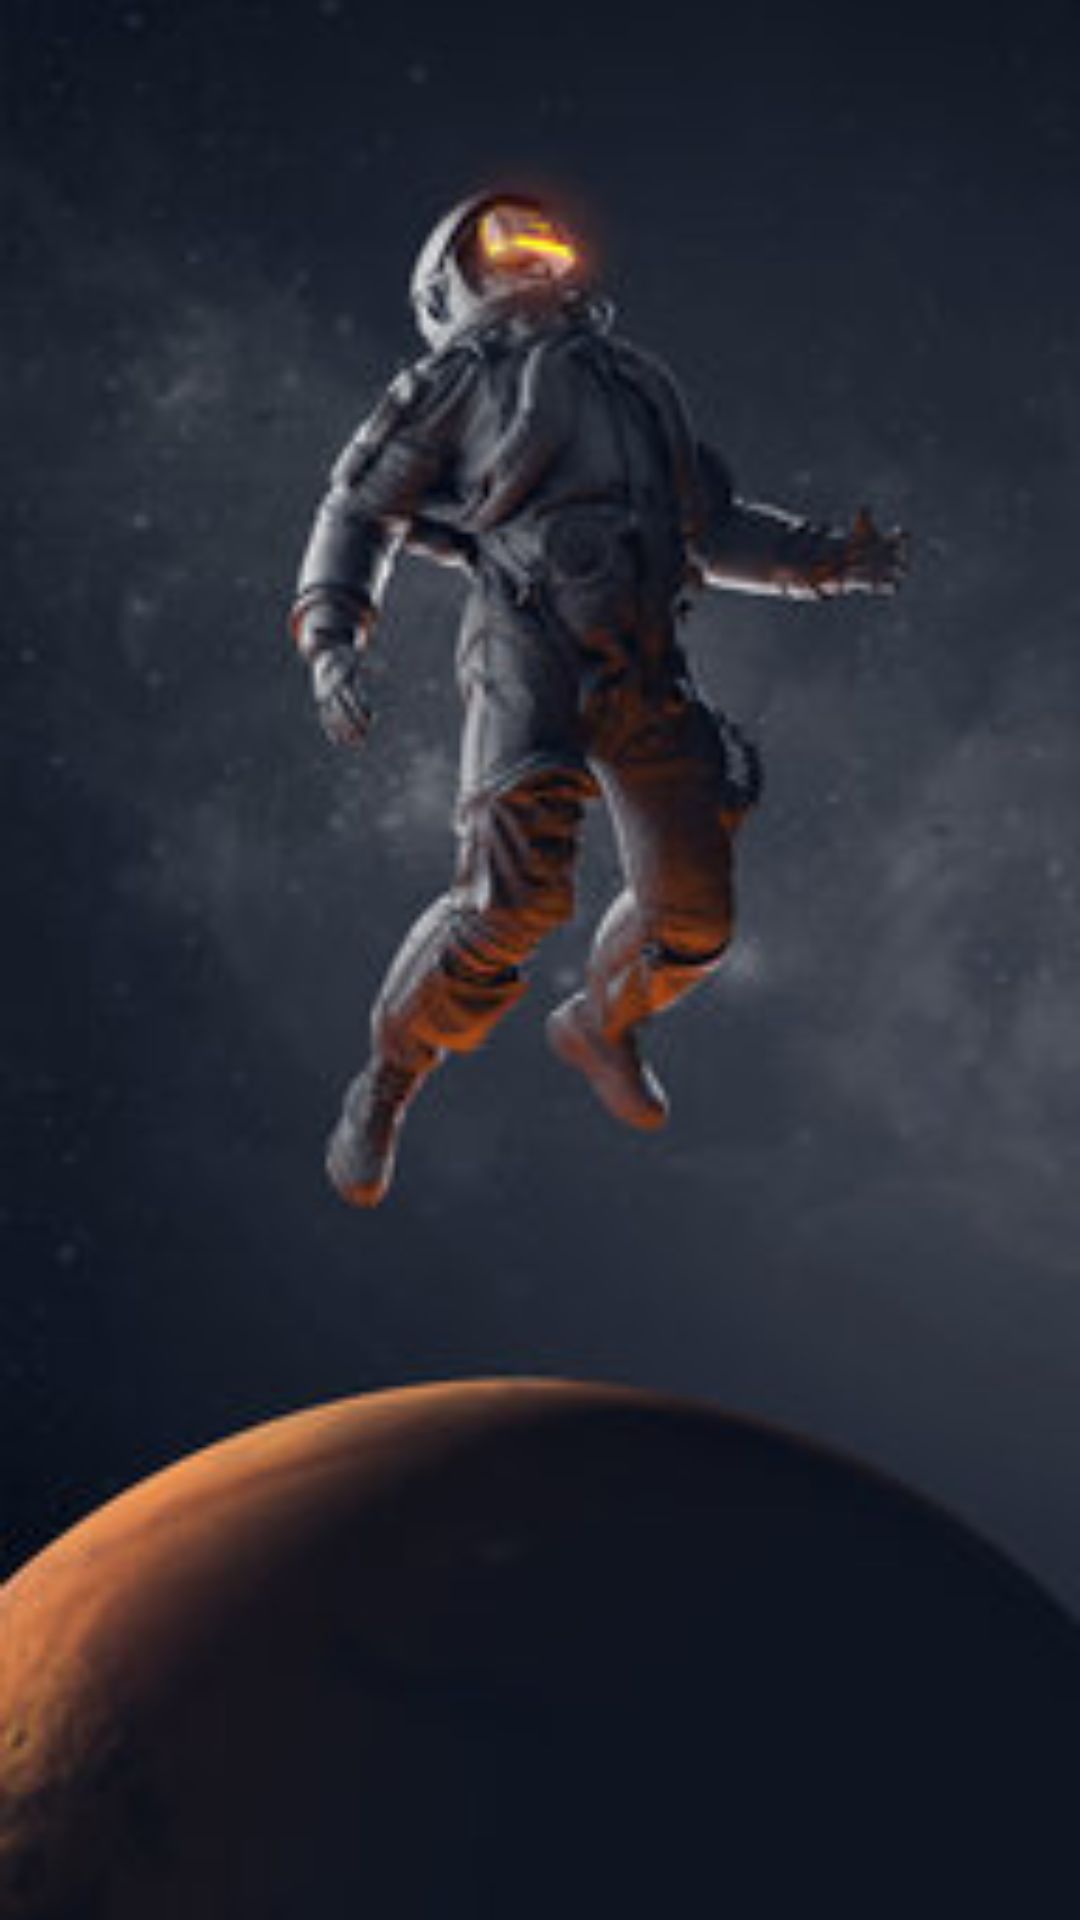 चांद से वापस लौटते ही चलना भूल जाते हैं अंतरिक्ष यात्री, जानें क्यों?